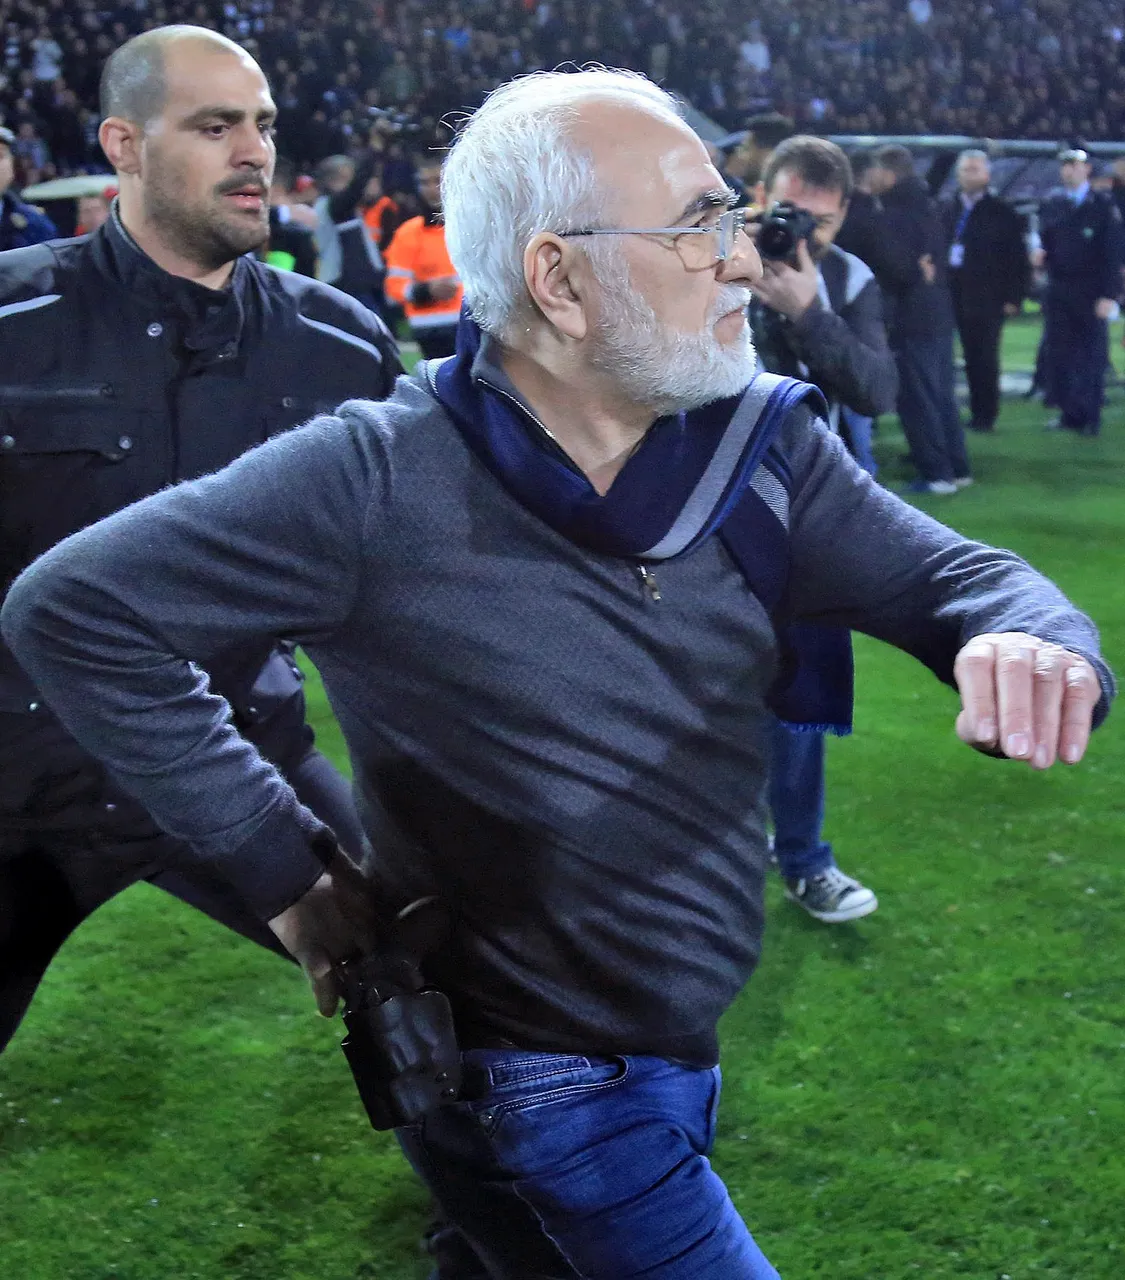 Kaos u Grčkoj: vlasnik PAOK-a pištoljem prijetio sucu, vlada prekinula prvenstvo!